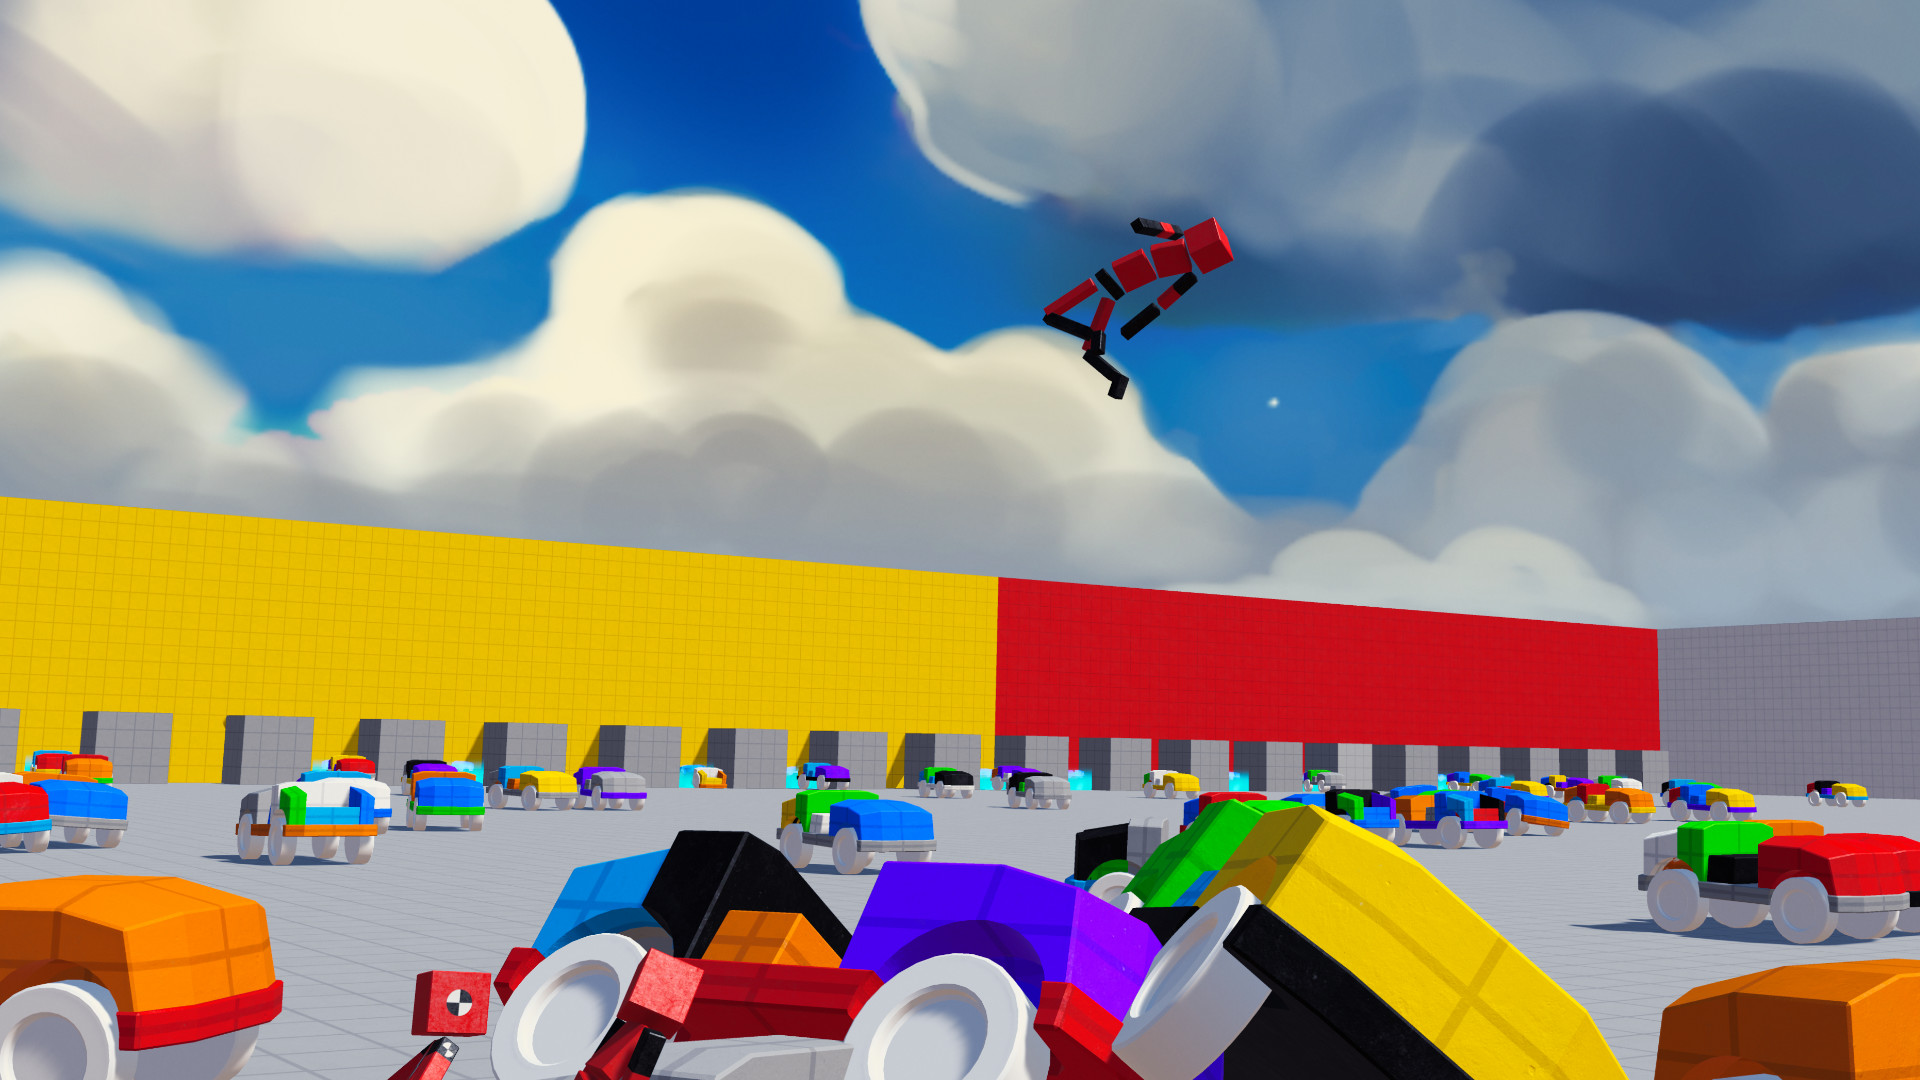 Fun with Ragdolls: The Game screenshot